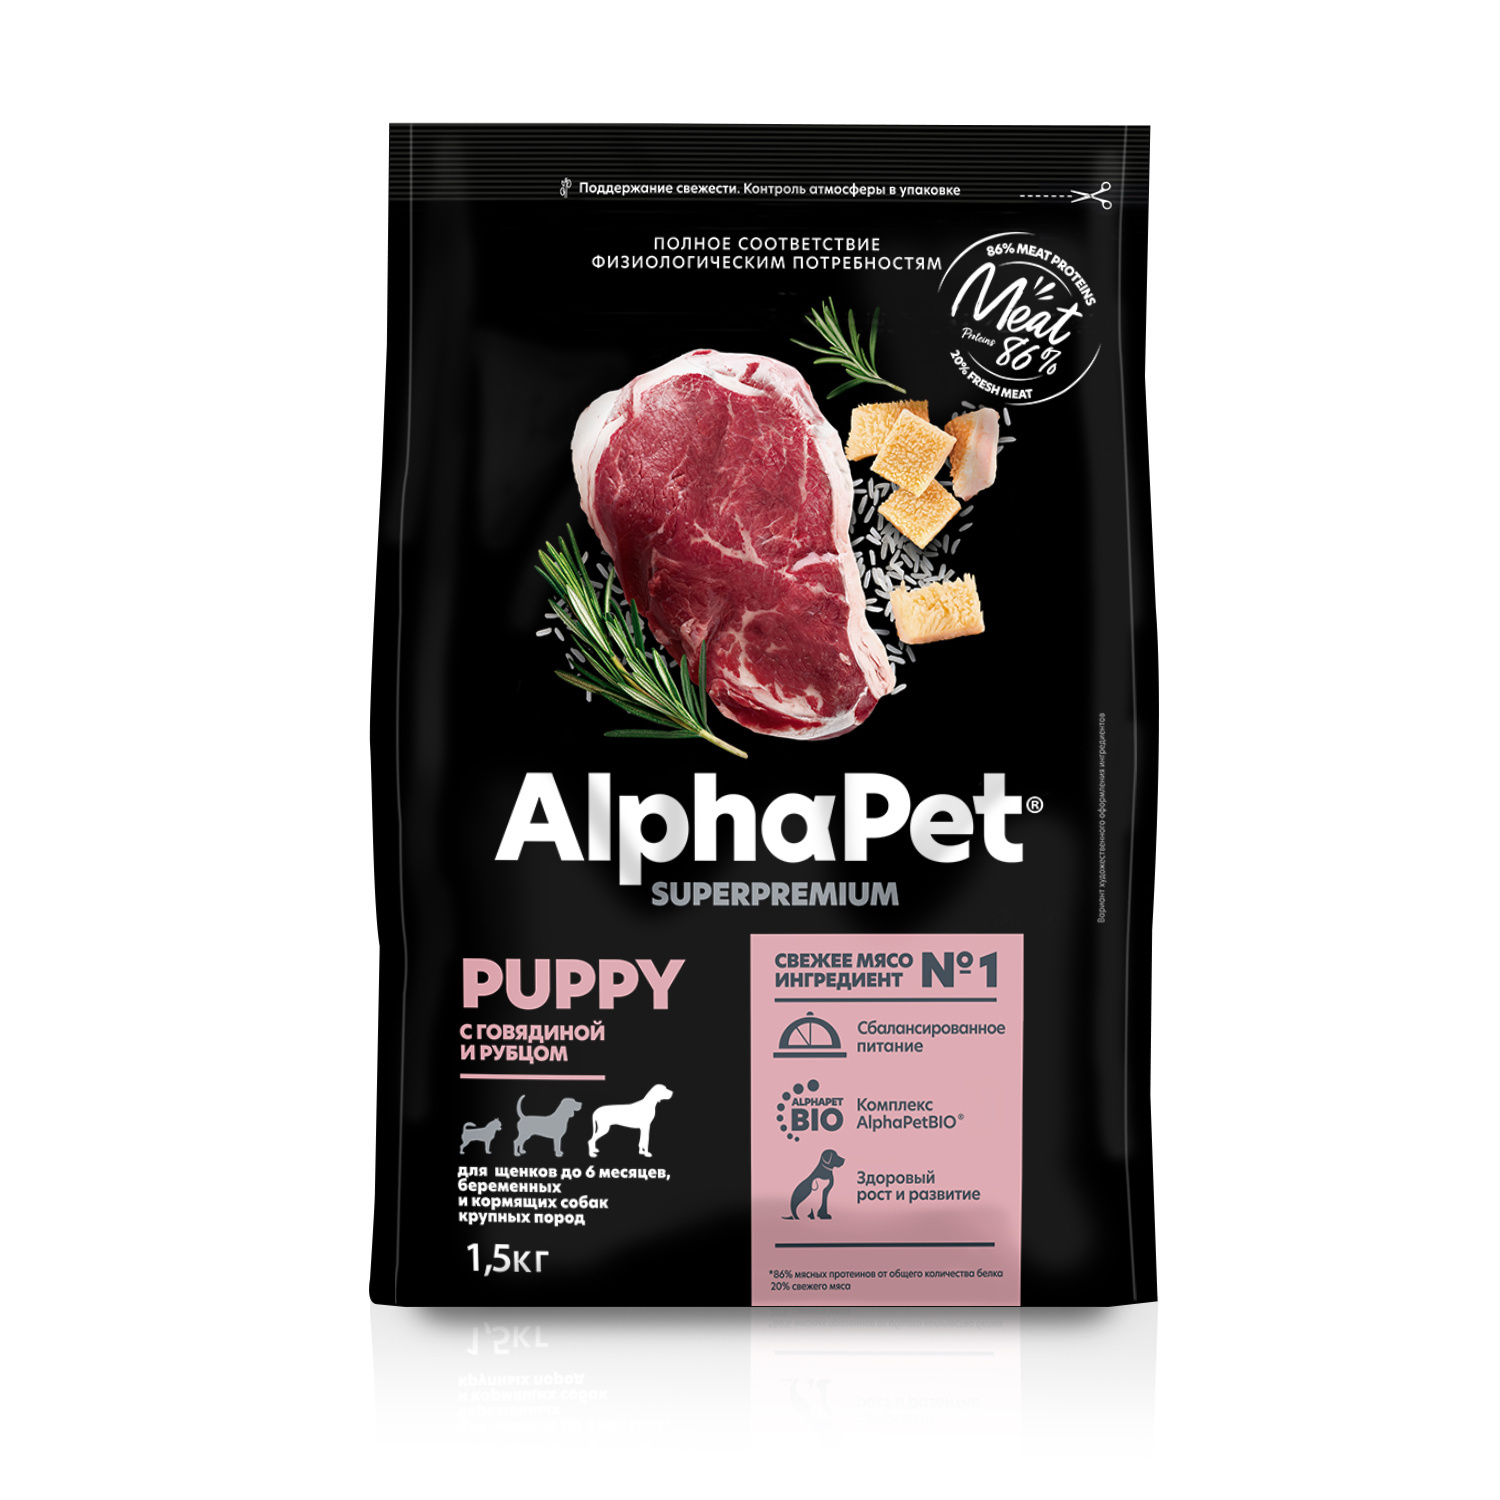 AlphaPet AlphaPet сухой полнорационный корм с говядиной и рубцом для щенков до 6 месяцев, беременных и кормящих собак крупных пород (1,5 кг)